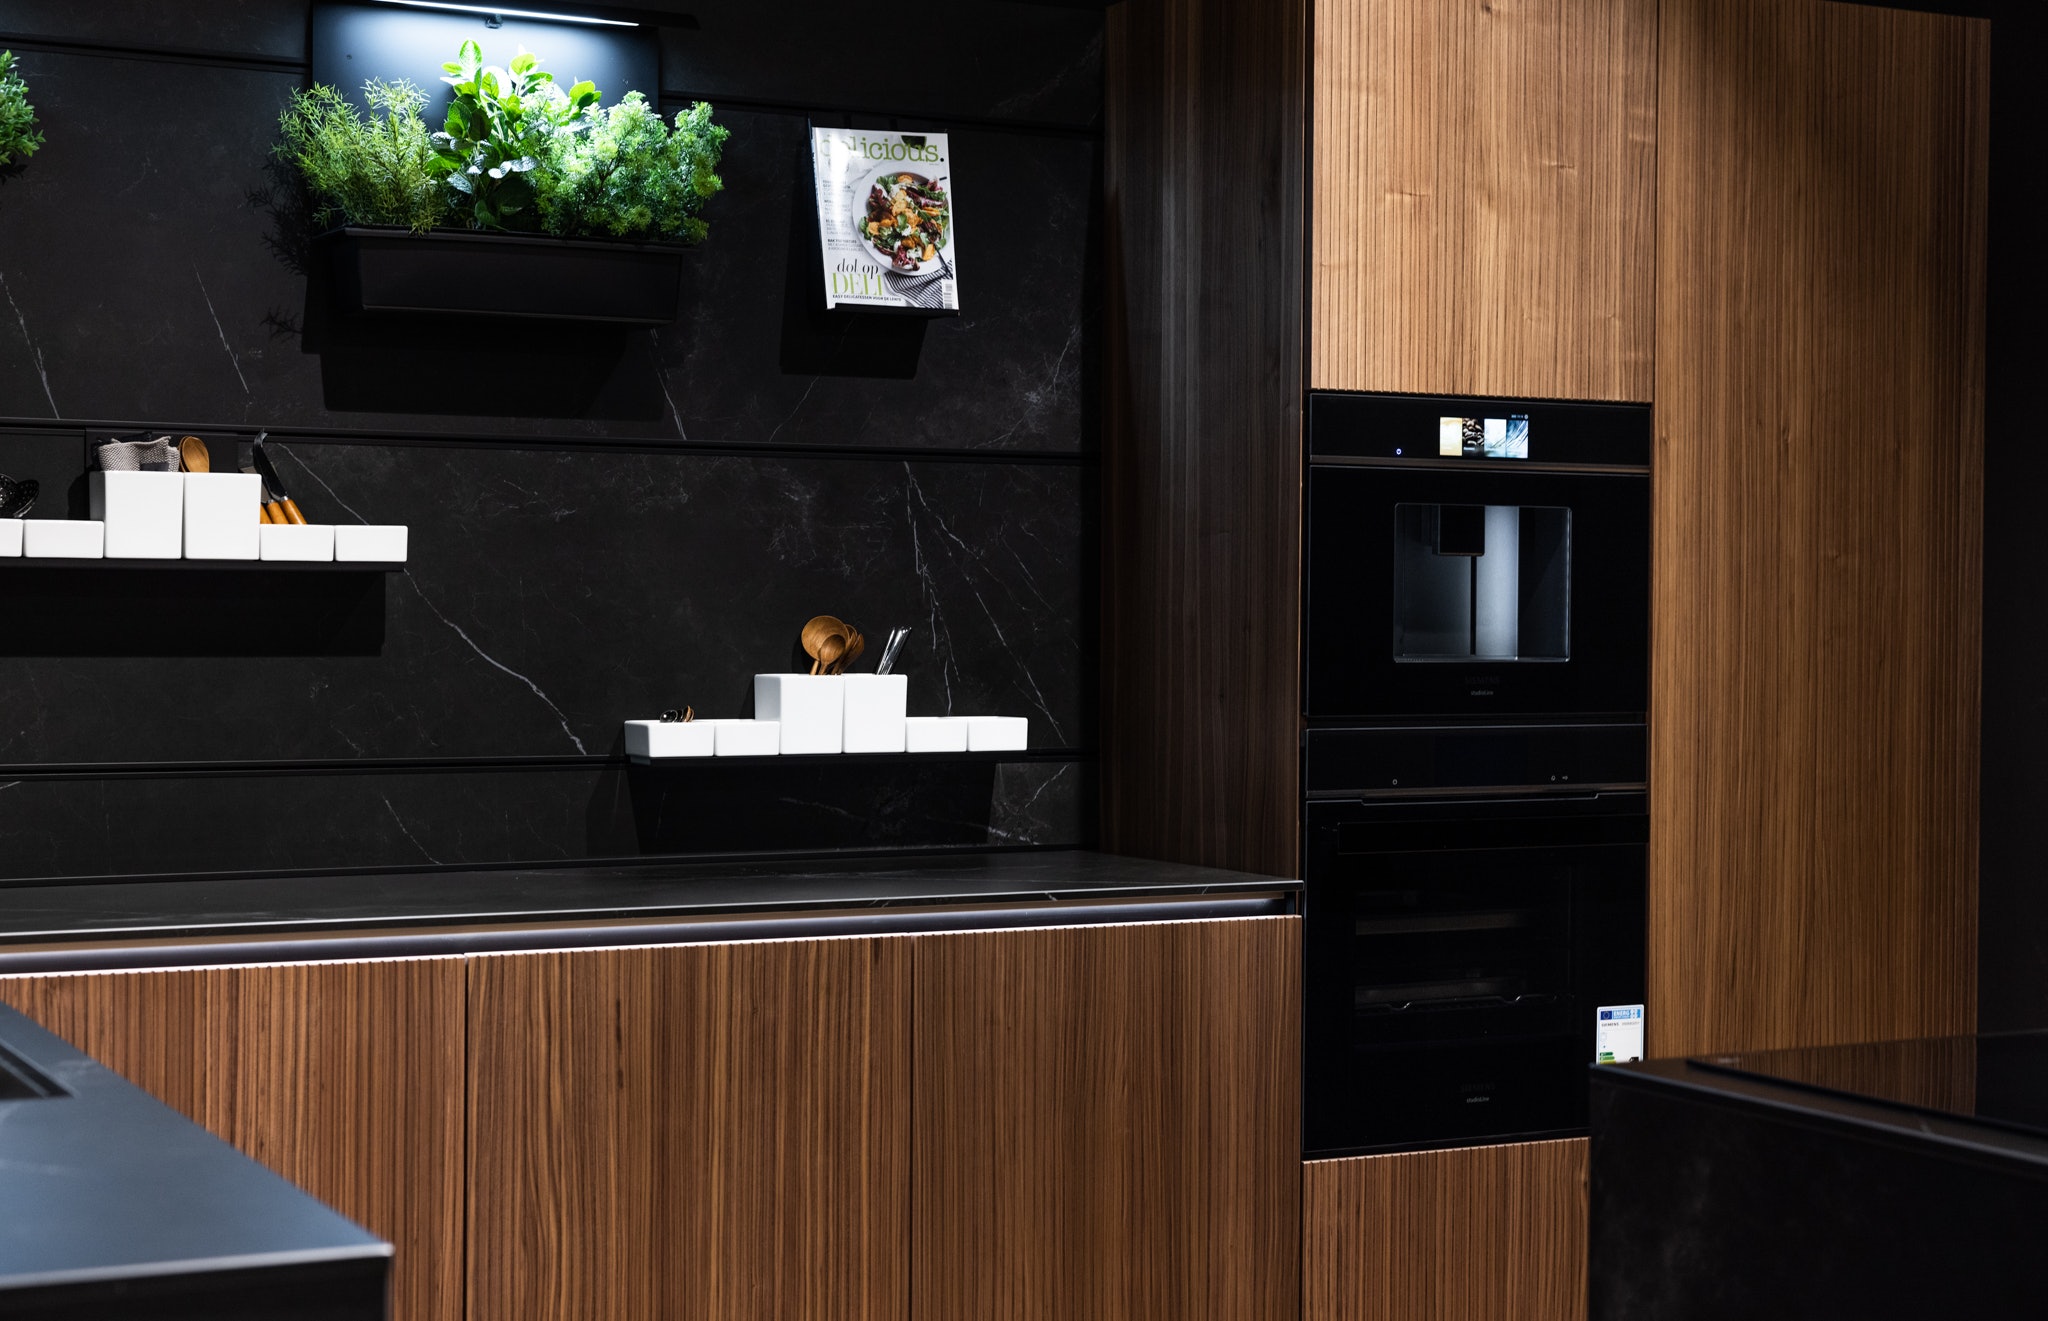 De Siemens apparatuur is van topkwaliteit en past perfect bij de stijl van de keuken.